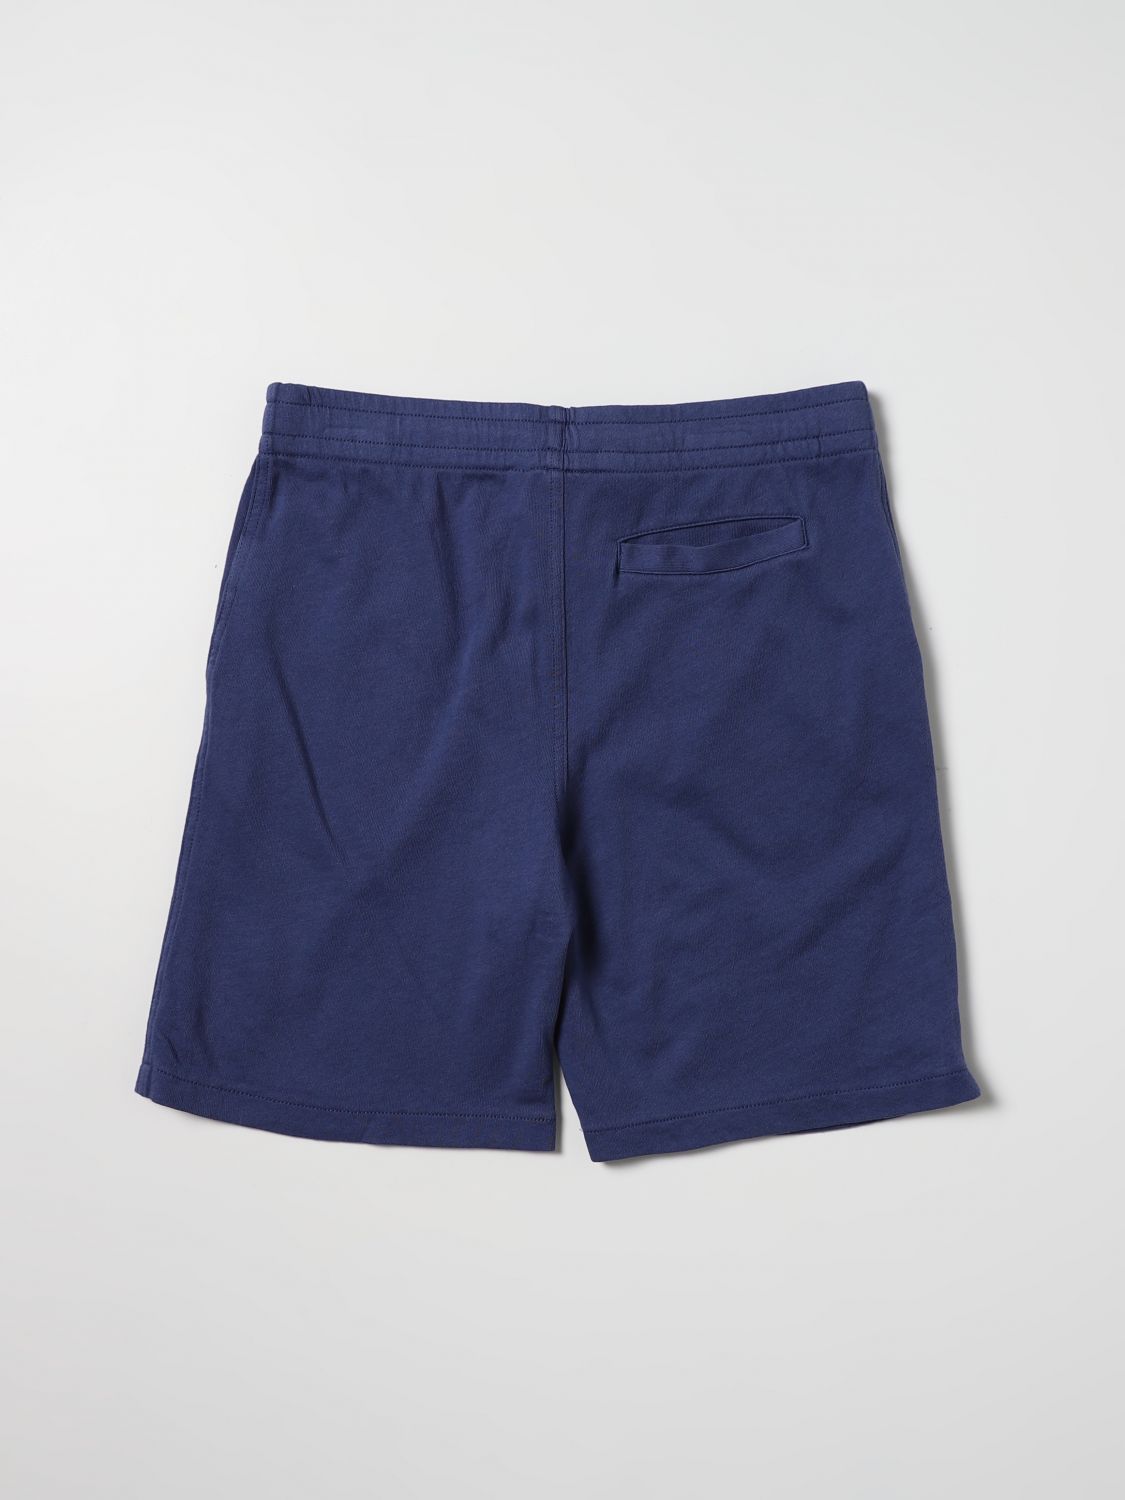 Shorts Polo Ralph Lauren: Polo Ralph Lauren Jungen Shorts blau 2